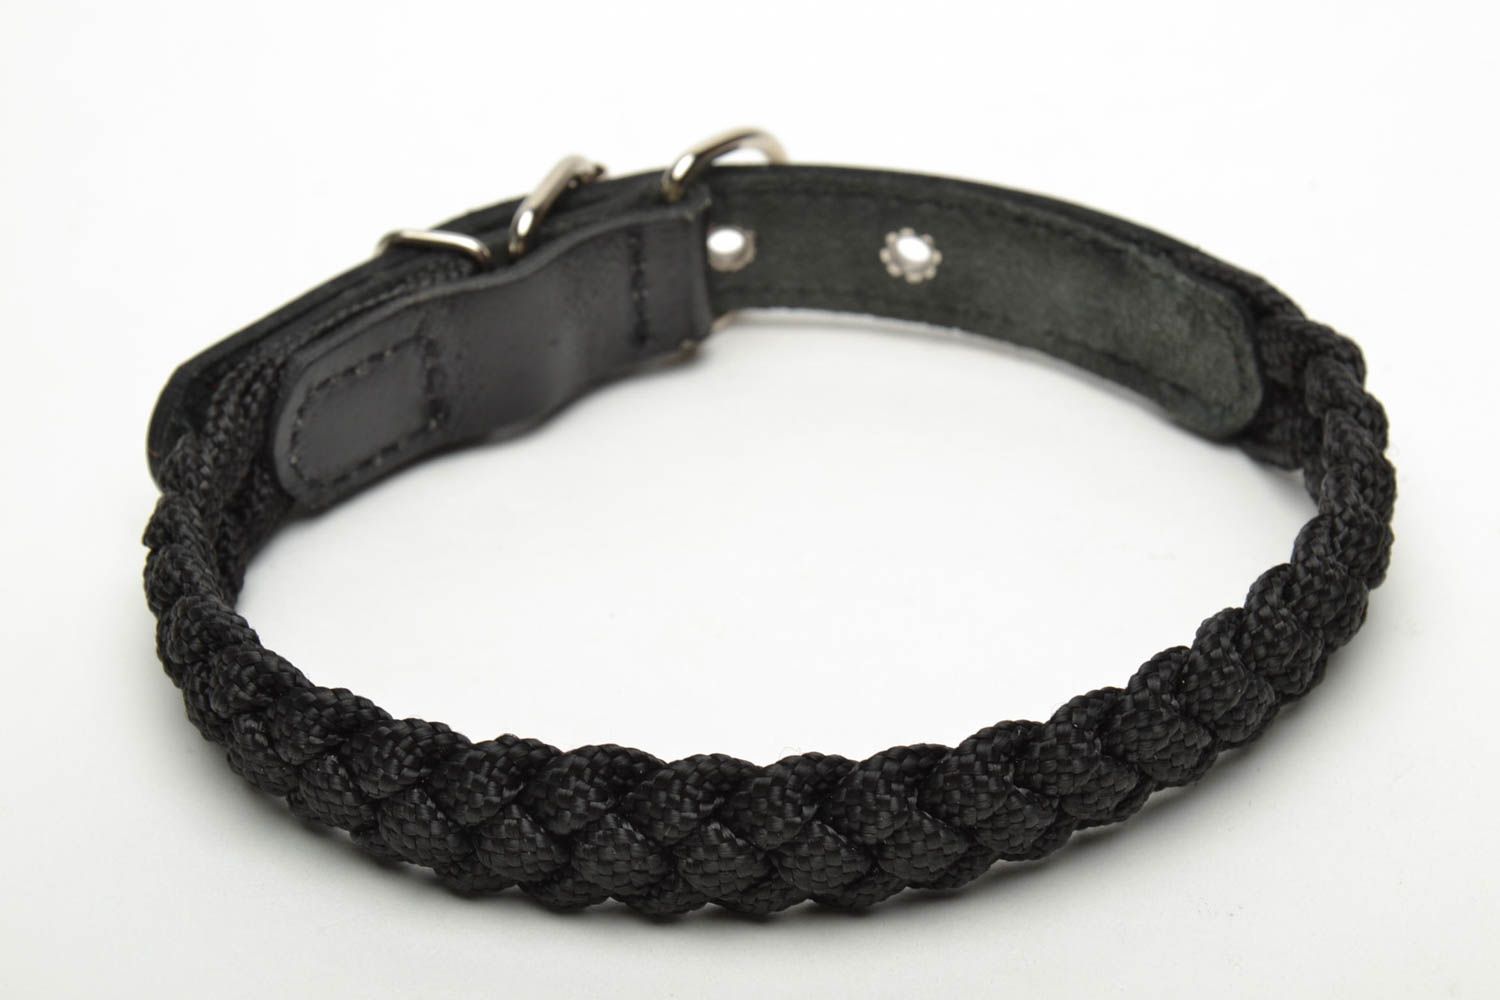 Textil Halsband für Hund in Schwarz foto 3